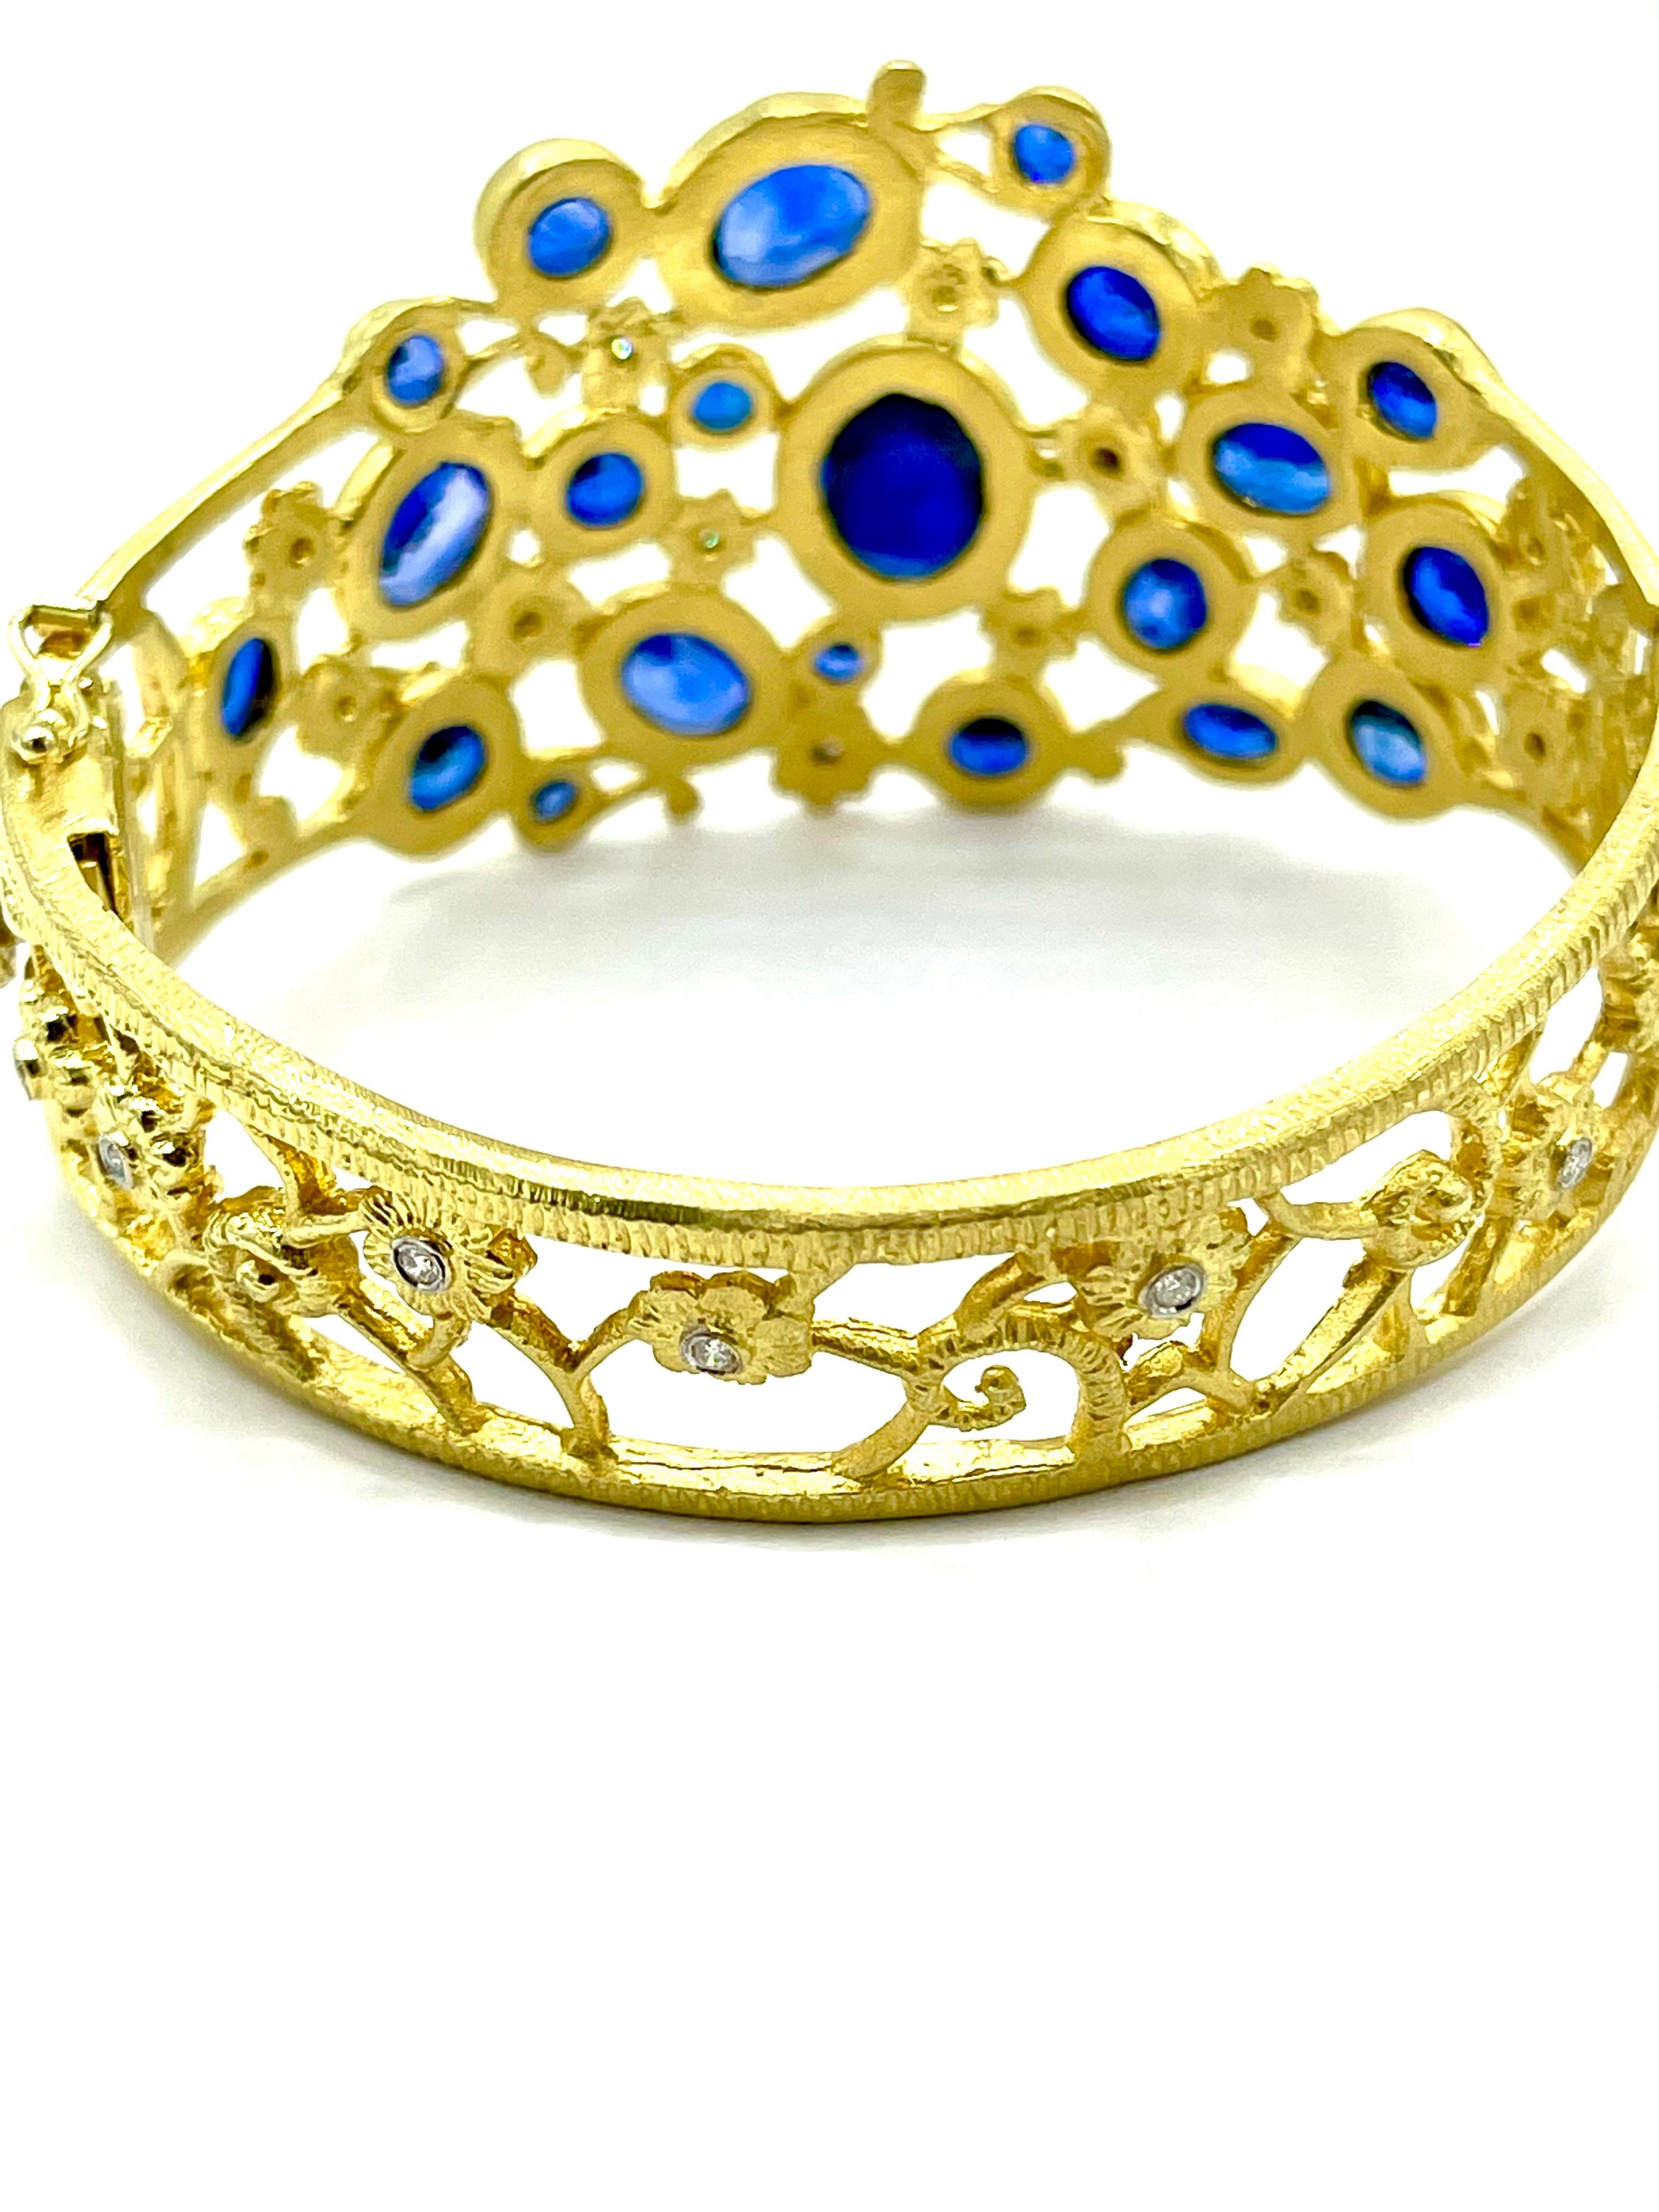 Mixed Cut Tanya Farah 29.70 Carat Sapphire and Diamond Floral Yellow Gold Bracelet